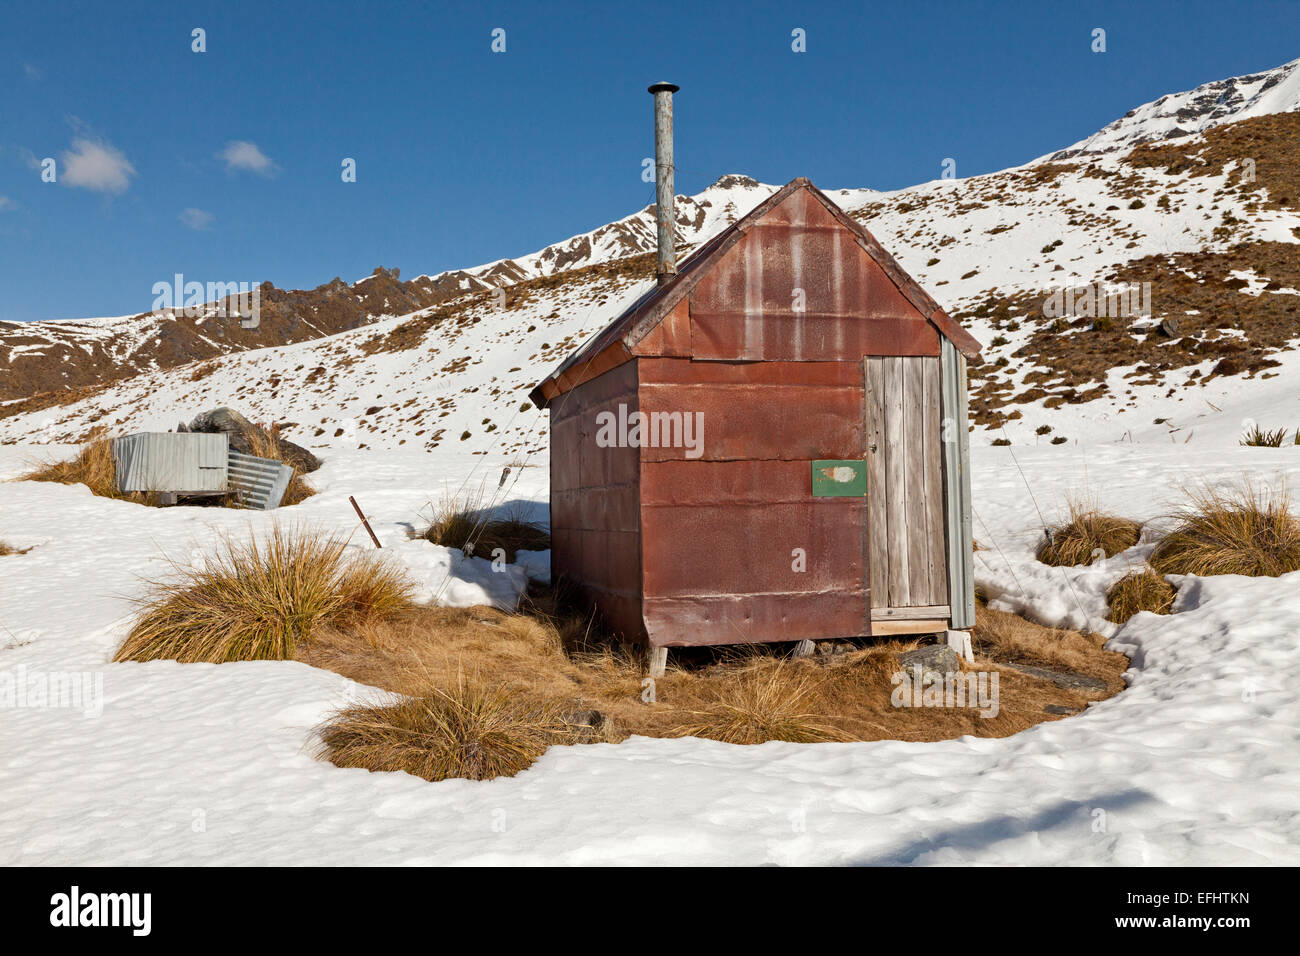 Gold Miner, historique, iron hut dans la neige, pionniers hut dans les montagnes, près de Queenstown, île du Sud, Nouvelle-Zélande Banque D'Images